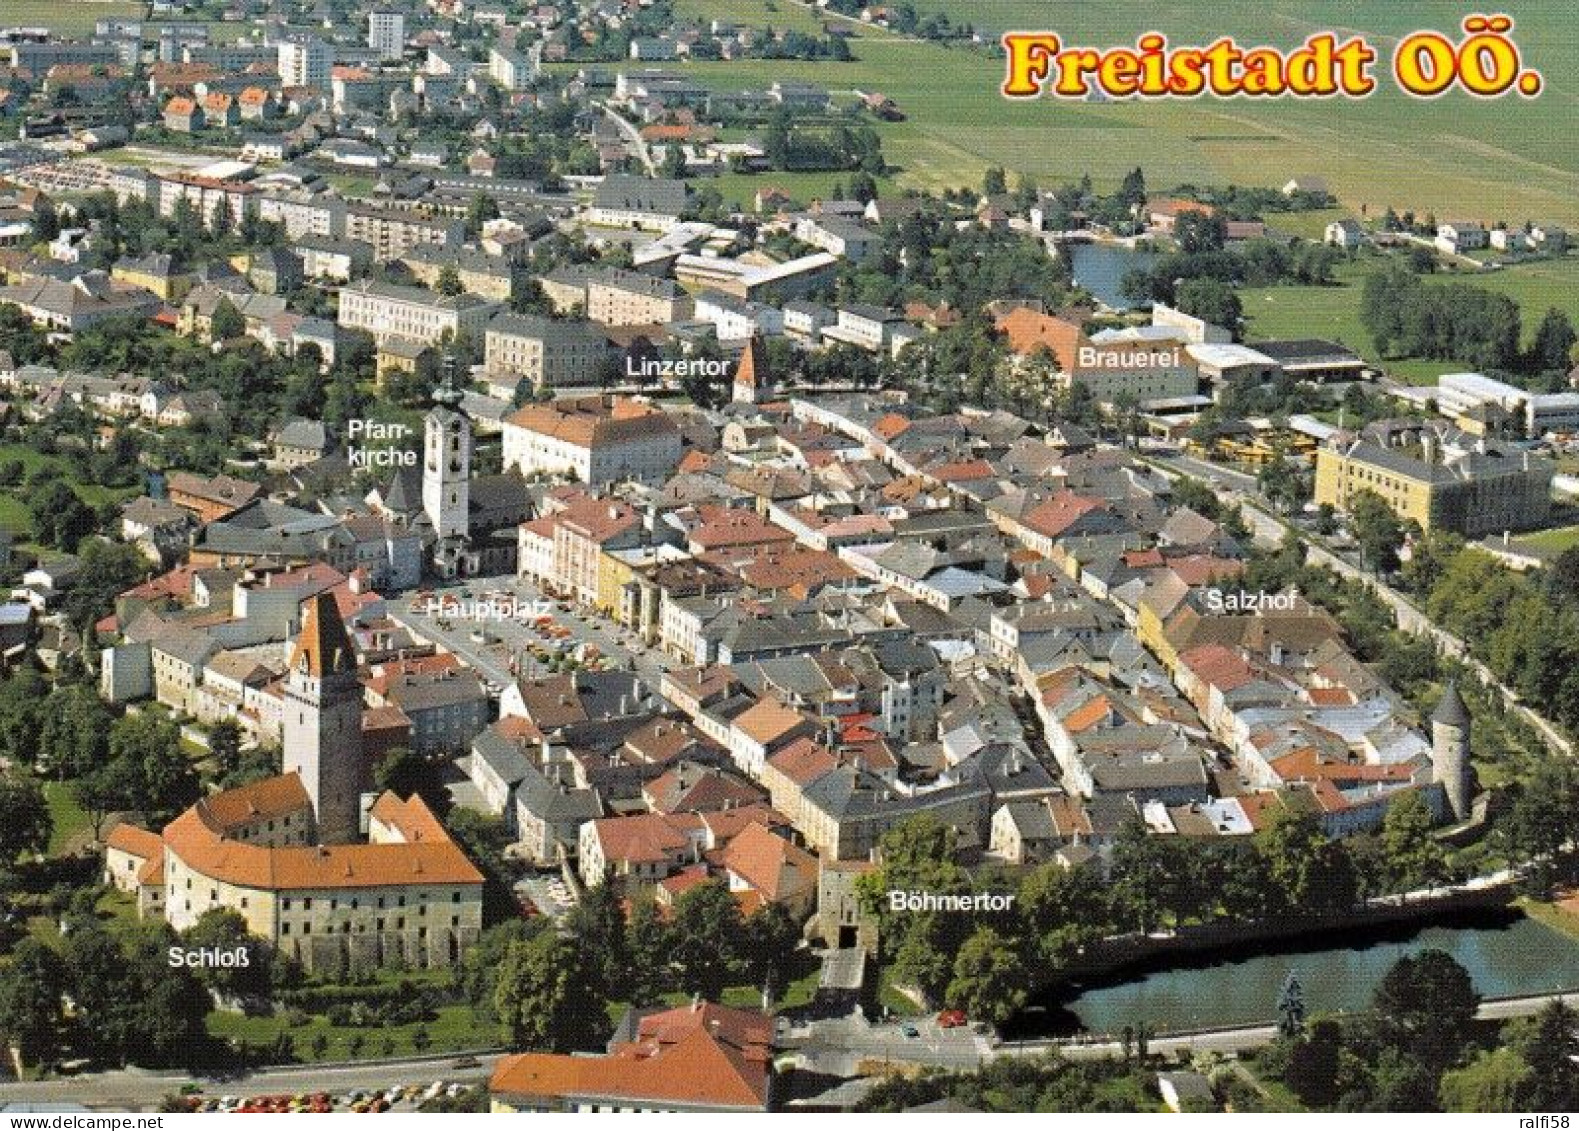 1 AK Österreich / OÖ * Der Romantische Stadtkern Von Freistadt Mit Schloß, Pfarrkirche, Hauptplatz, Linzertor, Böhmertor - Freistadt